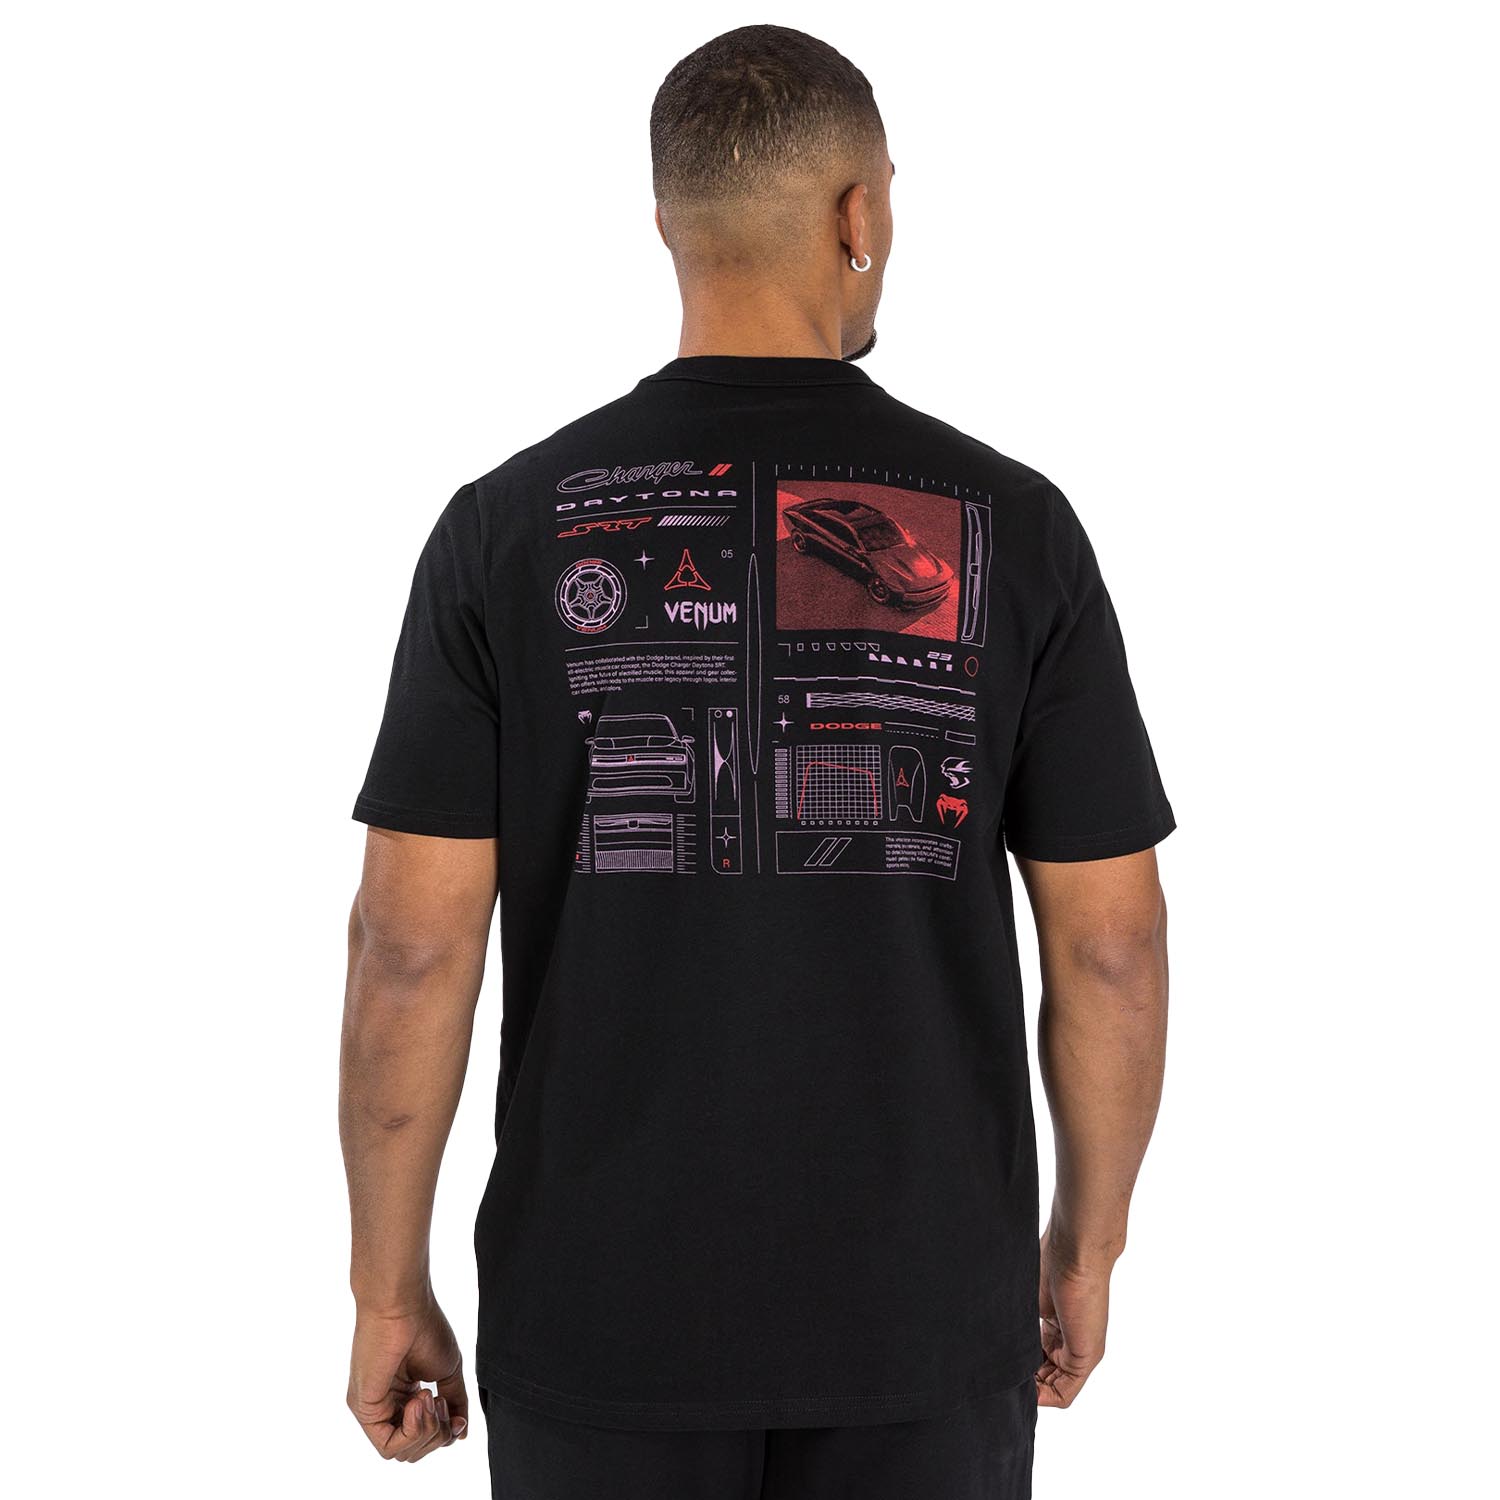 VENUM T-Shirt, Dodge Banshee, black